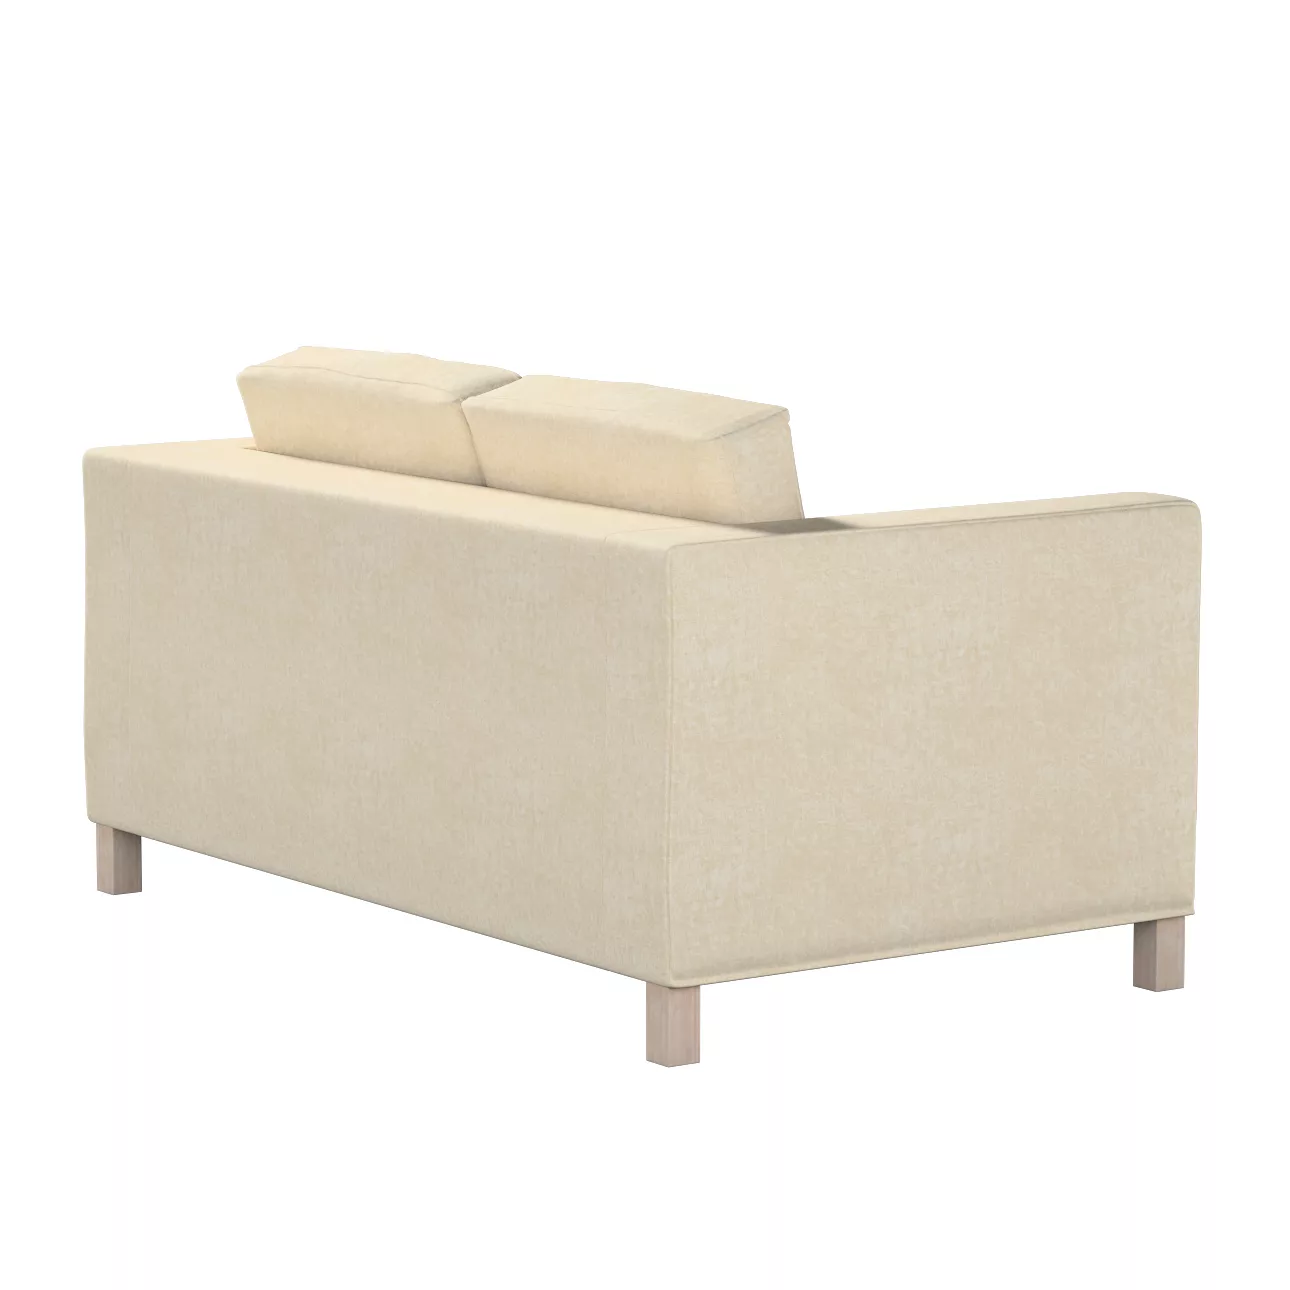 Bezug für Karlanda 2-Sitzer Sofa nicht ausklappbar, kurz, grau-beige, 60cm günstig online kaufen